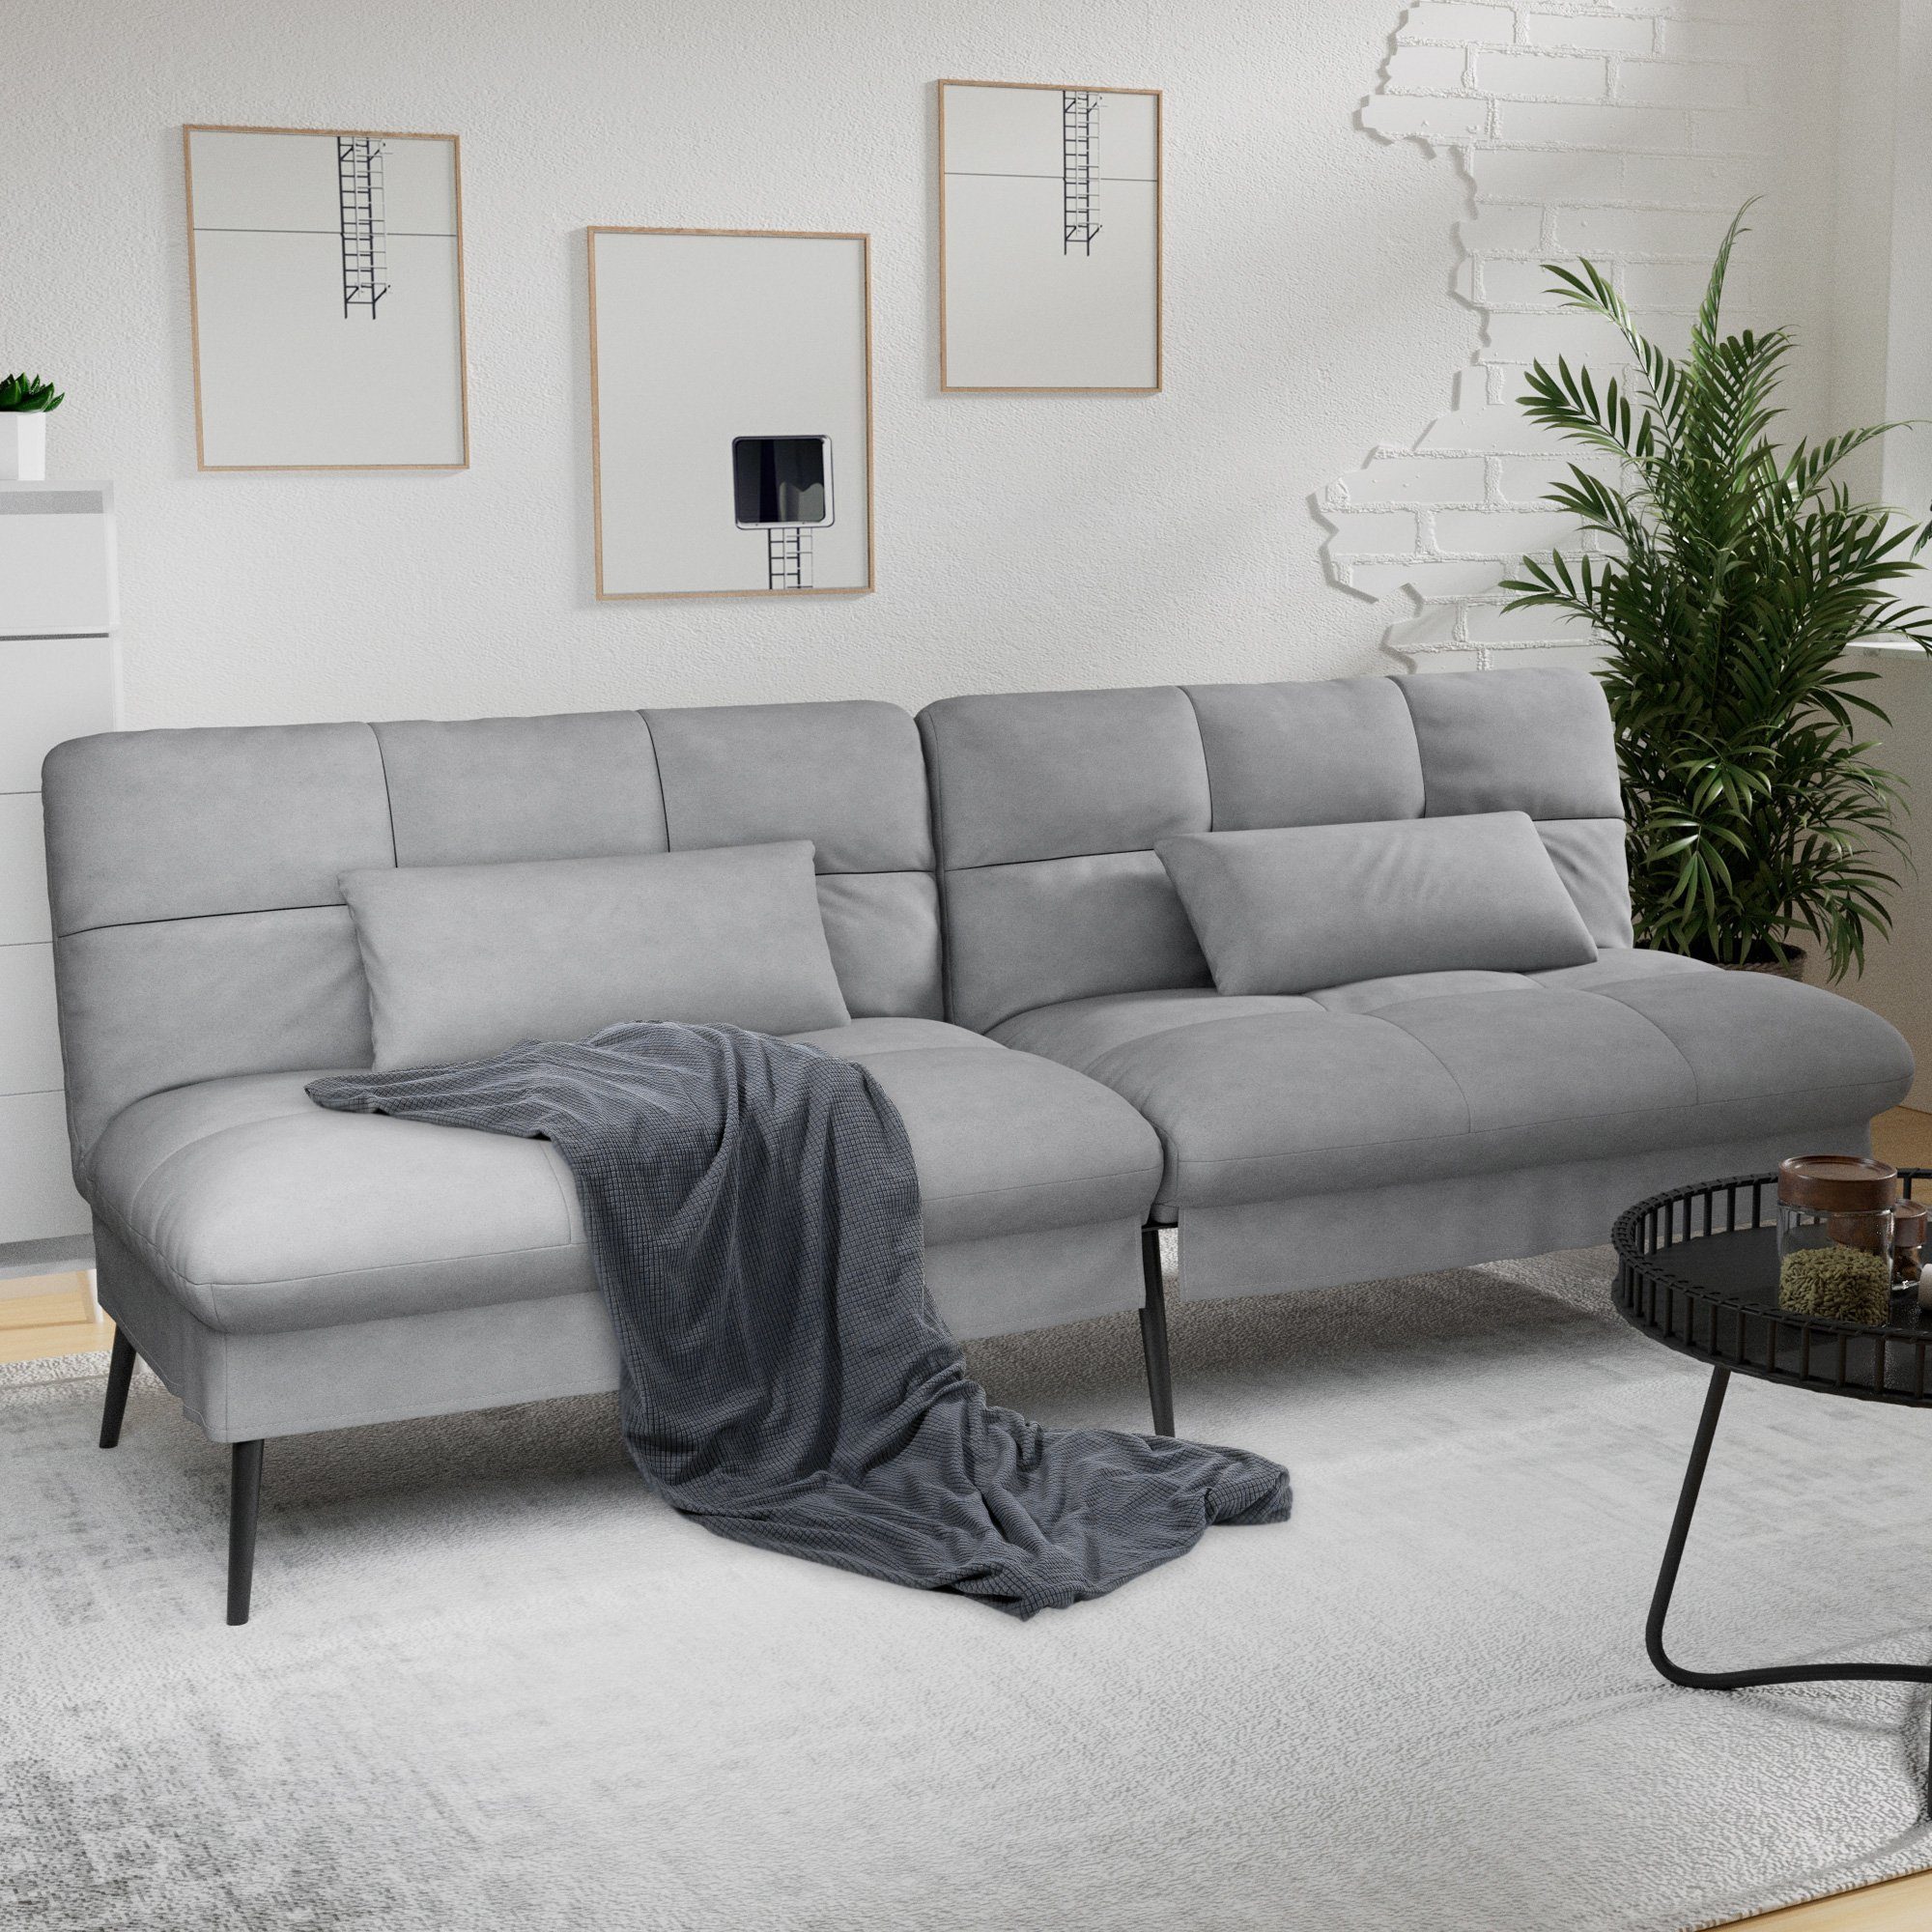 COMHOMA Sofa Schlafsofa mit Schlaffunktion, Bettsofa, Couch Gästebett mit verstellbare Rückenlehne aus Stoff grau